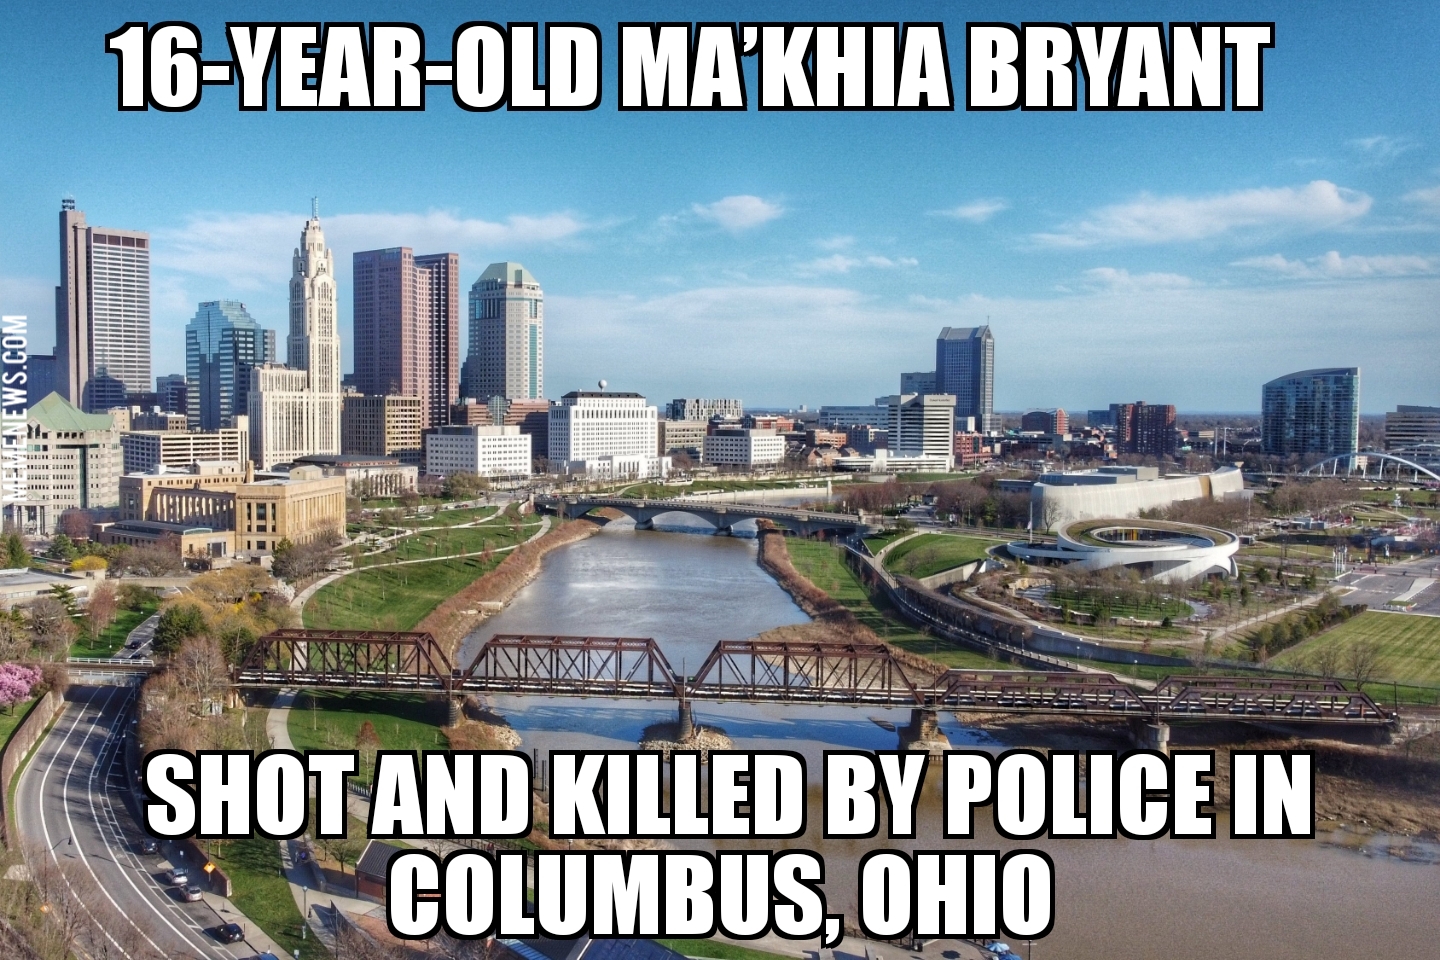 Ma’Khia Bryant killed by Columbus police